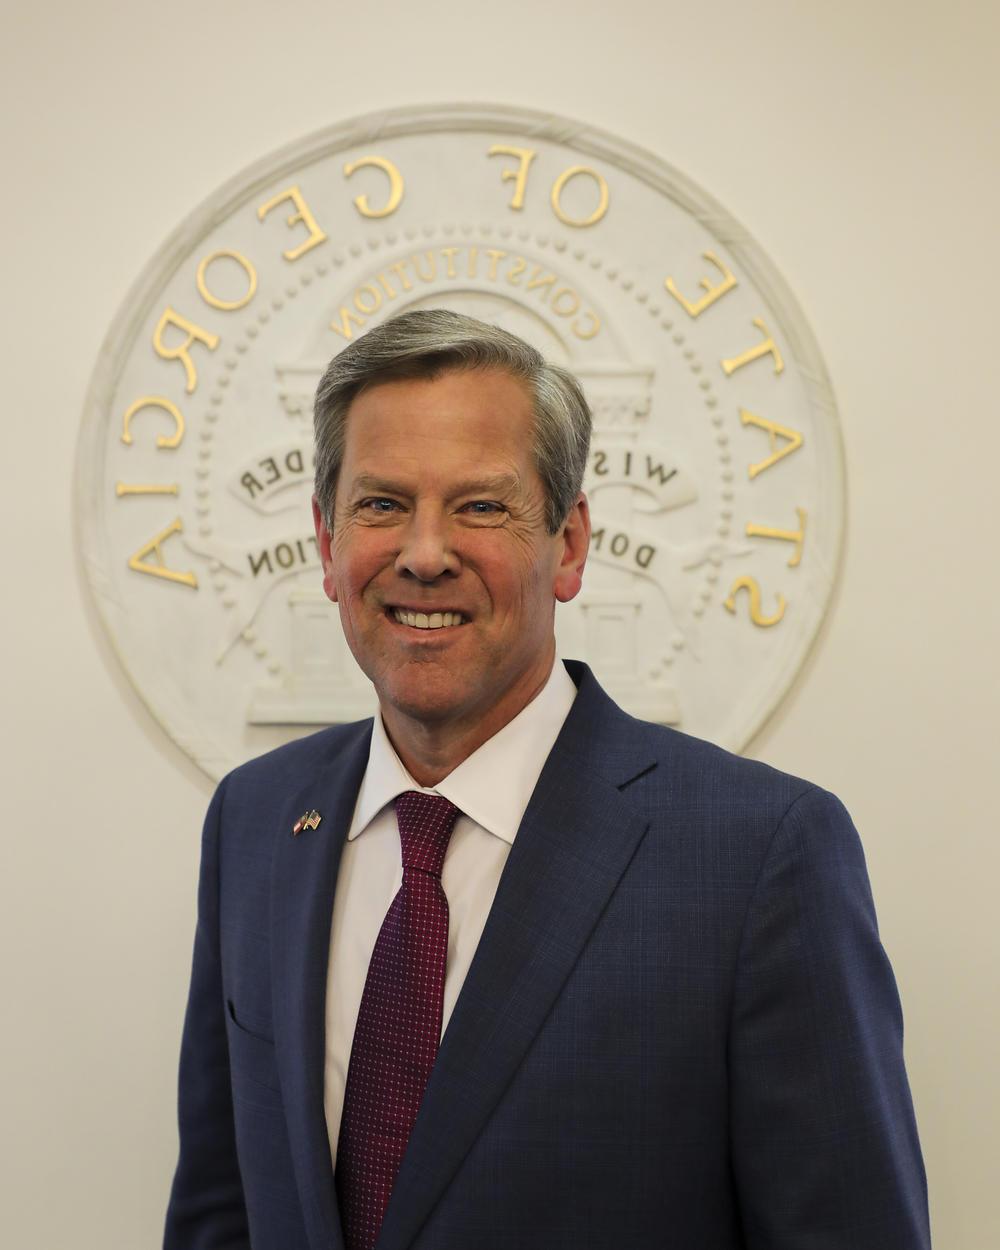 Governor Brian Kemp